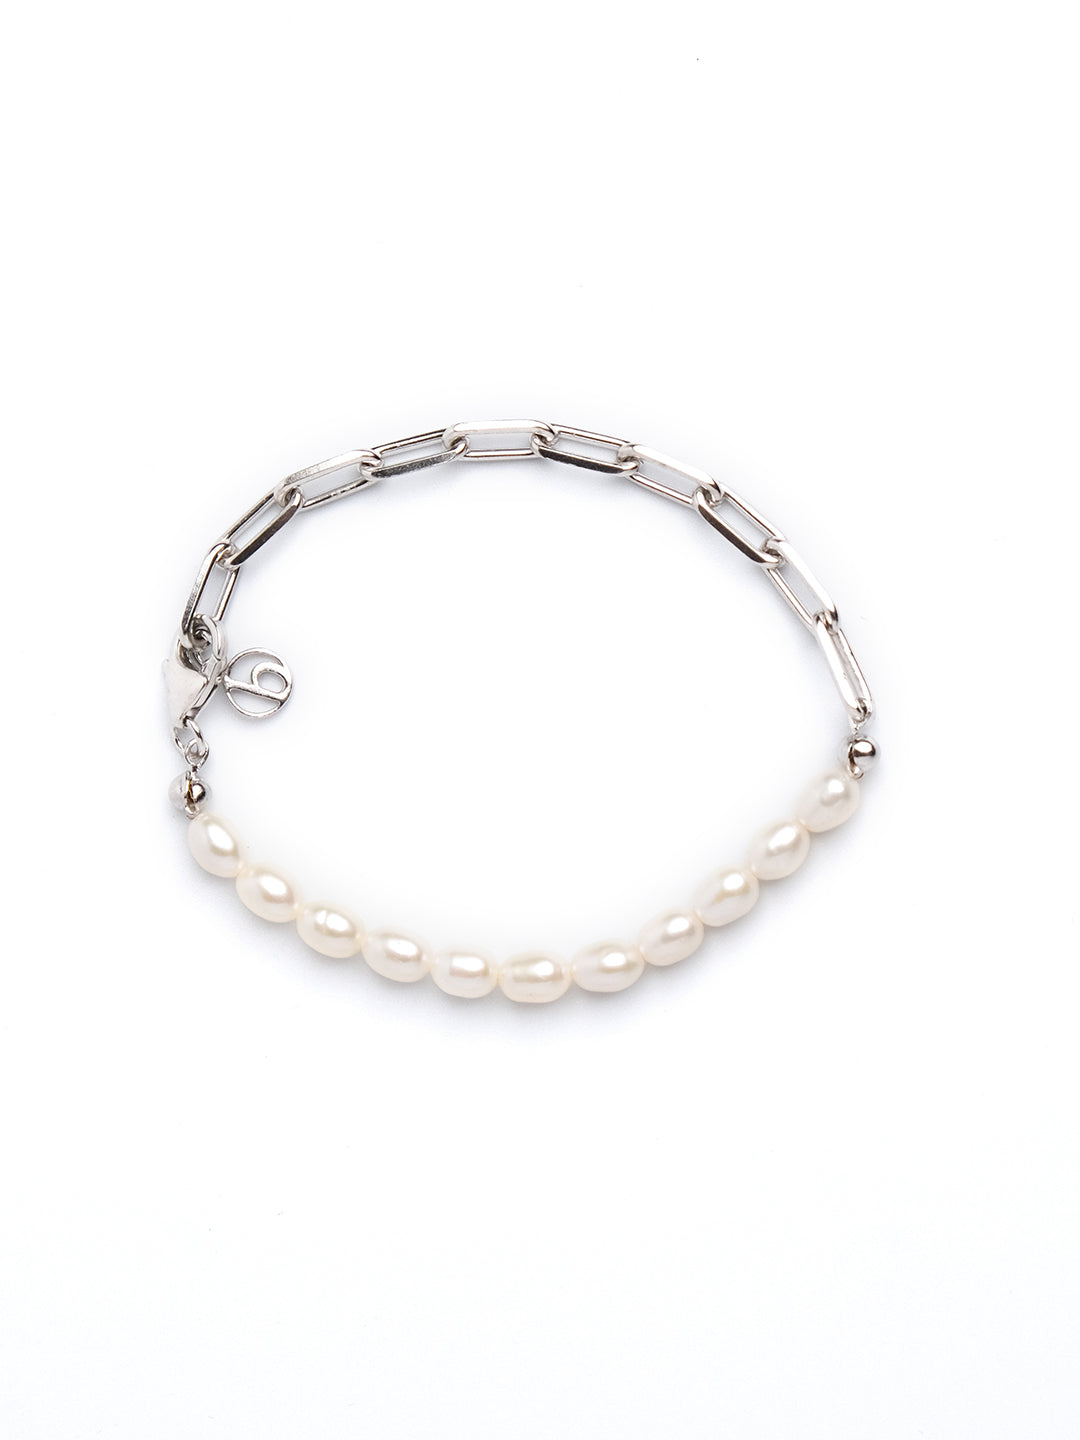 Bracelet High Quality New Pearl Bracelet Elastic Black Pearl Necklace Men's  Natural Stone Bracelet Men's Hand Accessories Jewellery Men : Amazon.de:  Fashion